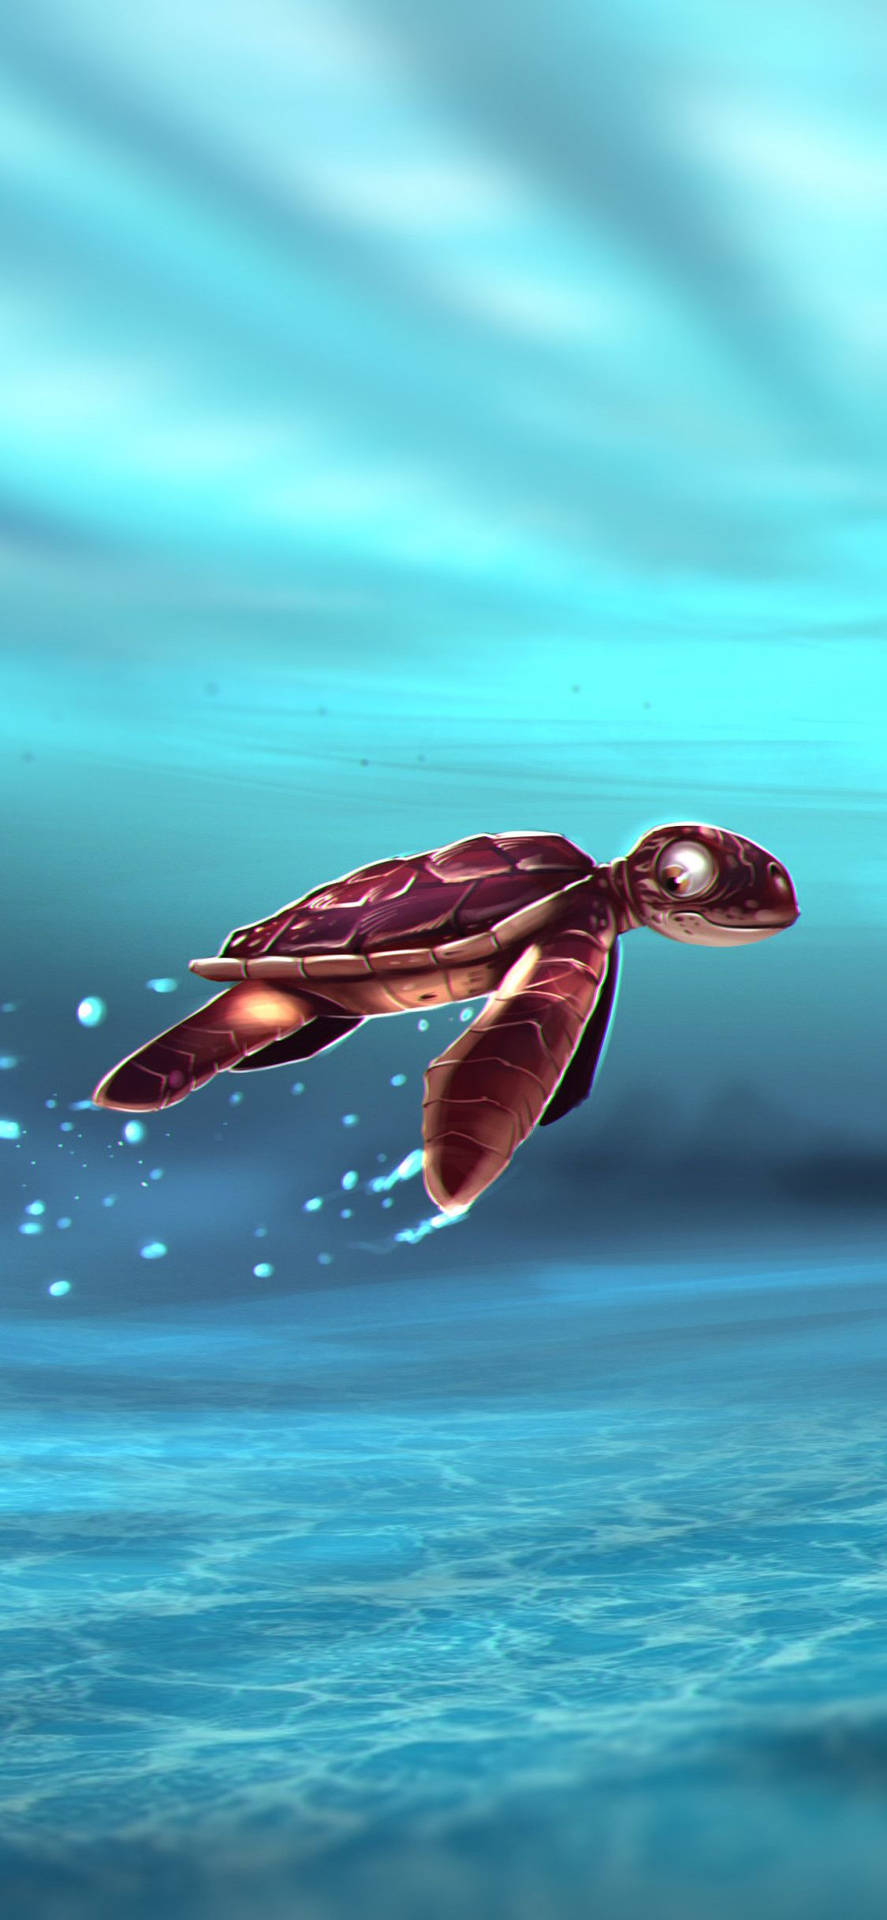 Erhaltensie Einen Genaueren Blick Auf Eine Meeresschildkröte Unter Wasser. Wallpaper